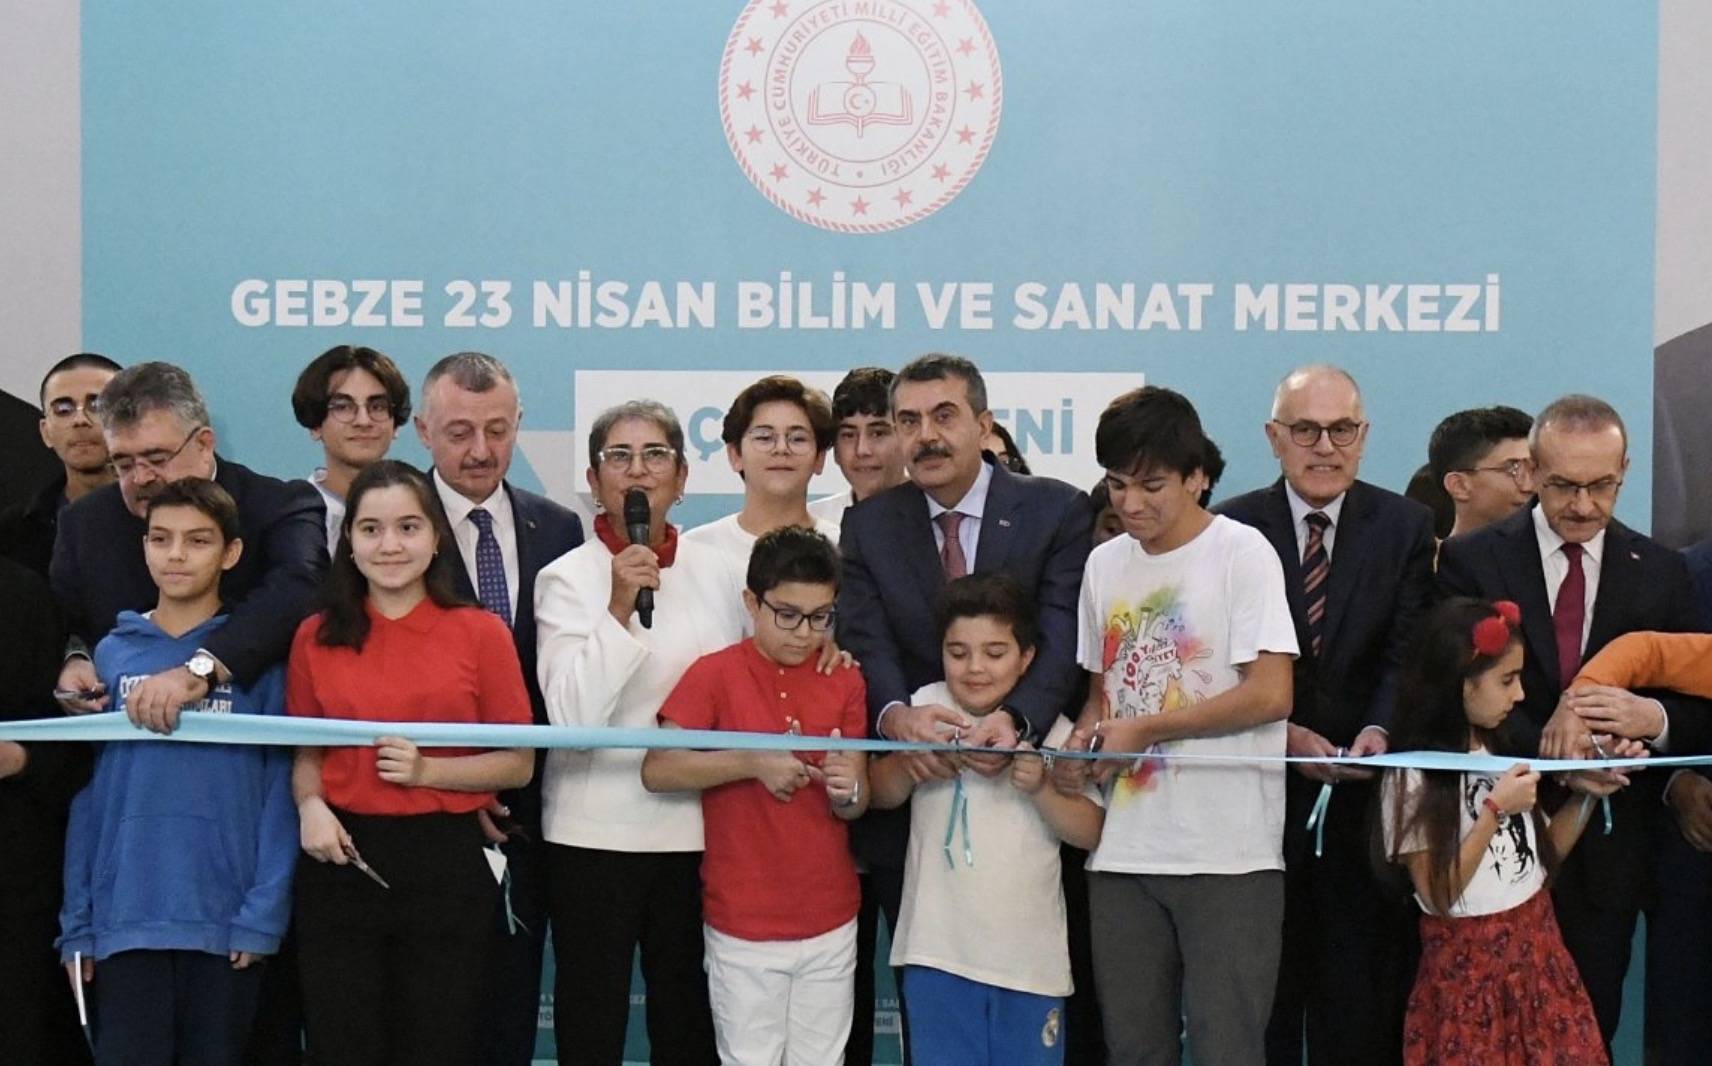 Gebze 23 Nisan Bilim ve Sanat Merkezi'nin açılışı Milli Eğitim Bakanı Yusuf Tekin'in katılımıyla gerçekleşti. 